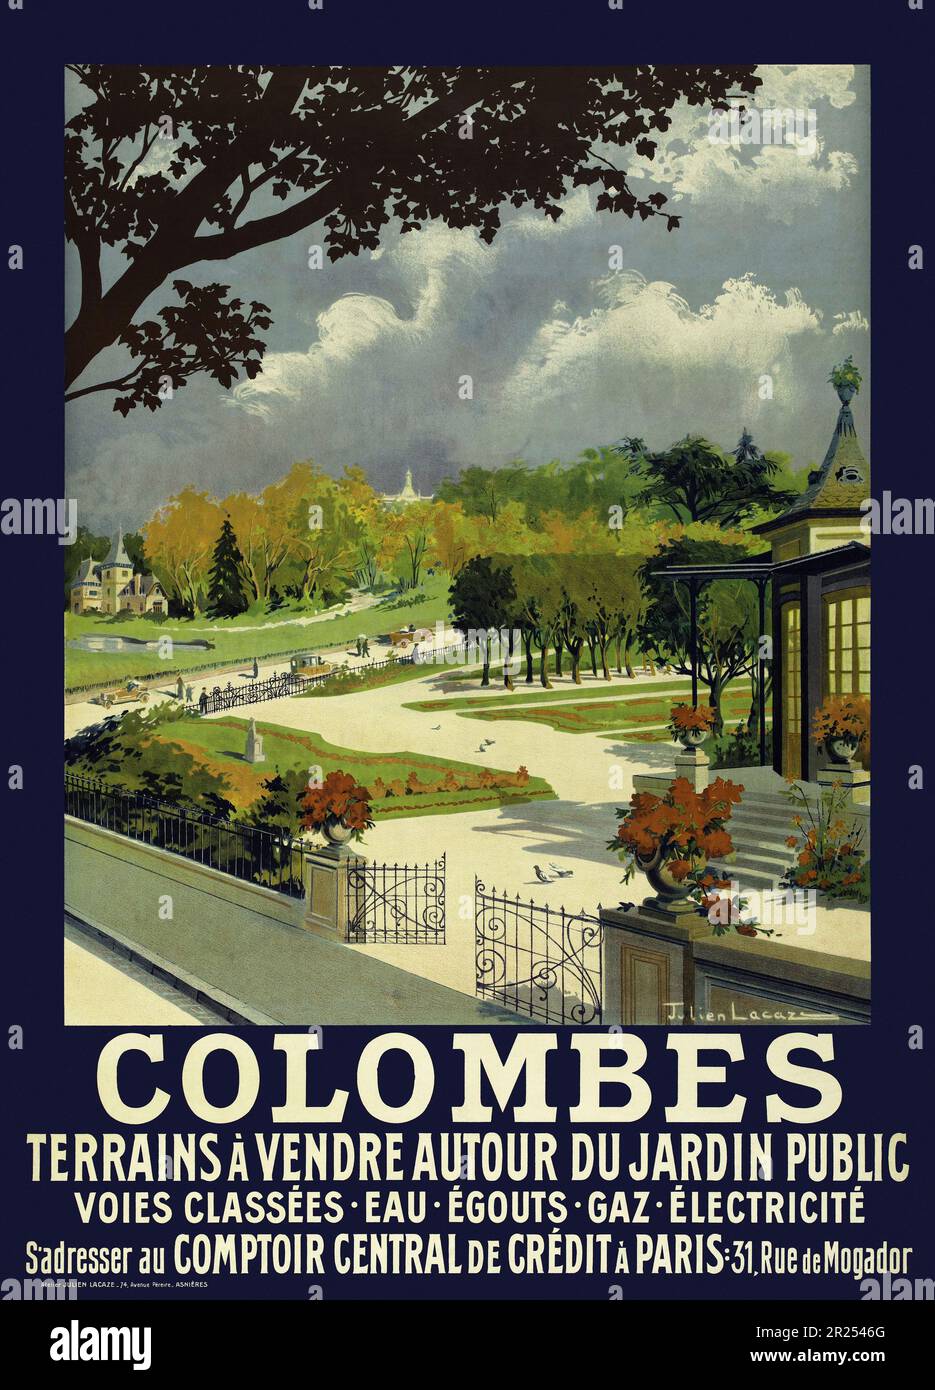 Colombes. Terrains à vendre autour du jardin public by Julien Lacaze (1886-1971). Poster published in 1914 in France. Stock Photo